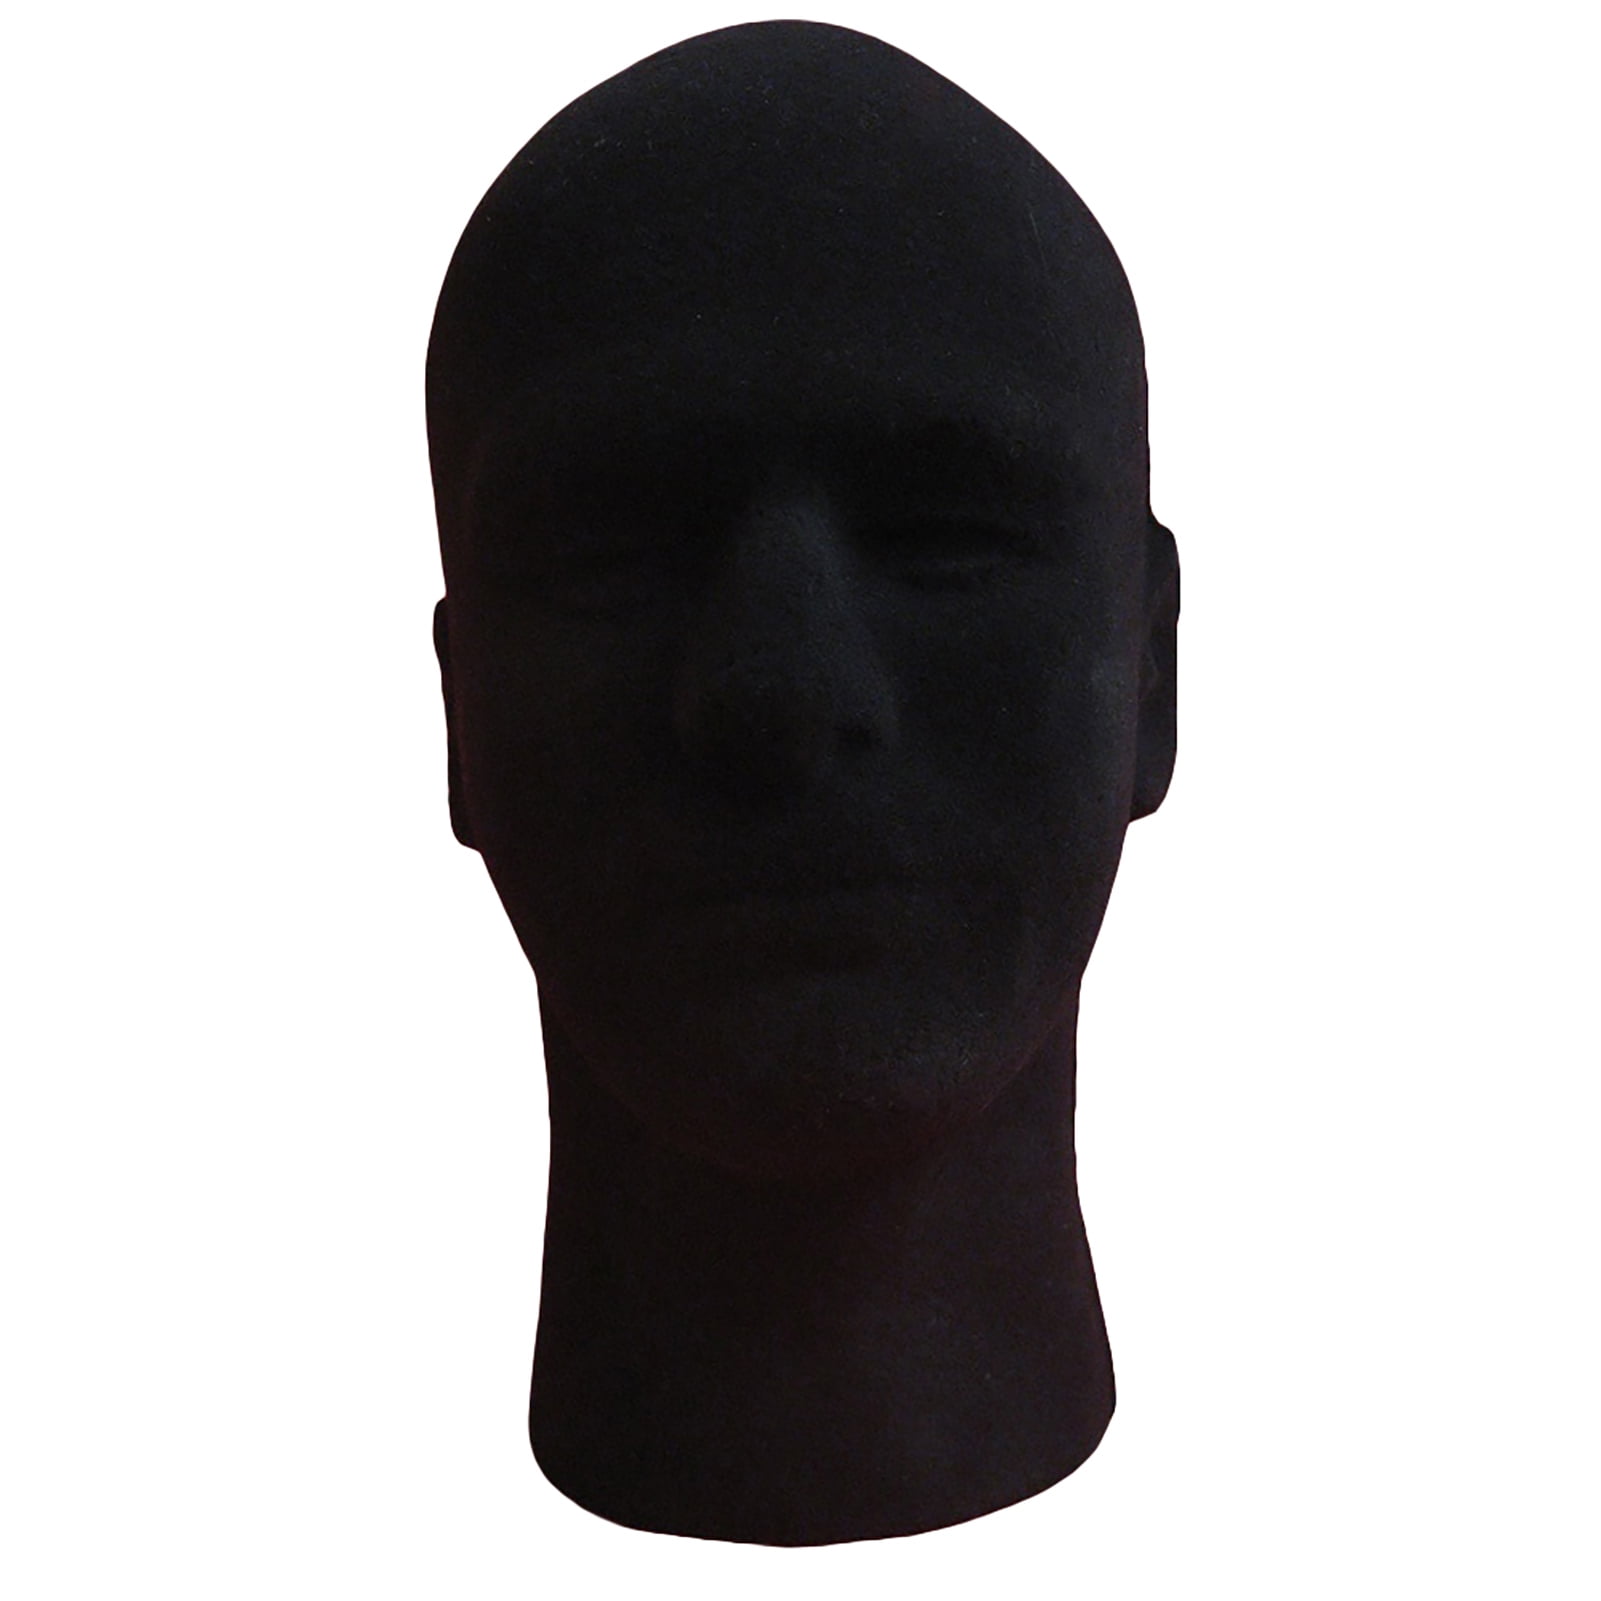 Male STYROFOAM FOAM black velvet like MANNEQUIN head display wig hat glasses 4pc 